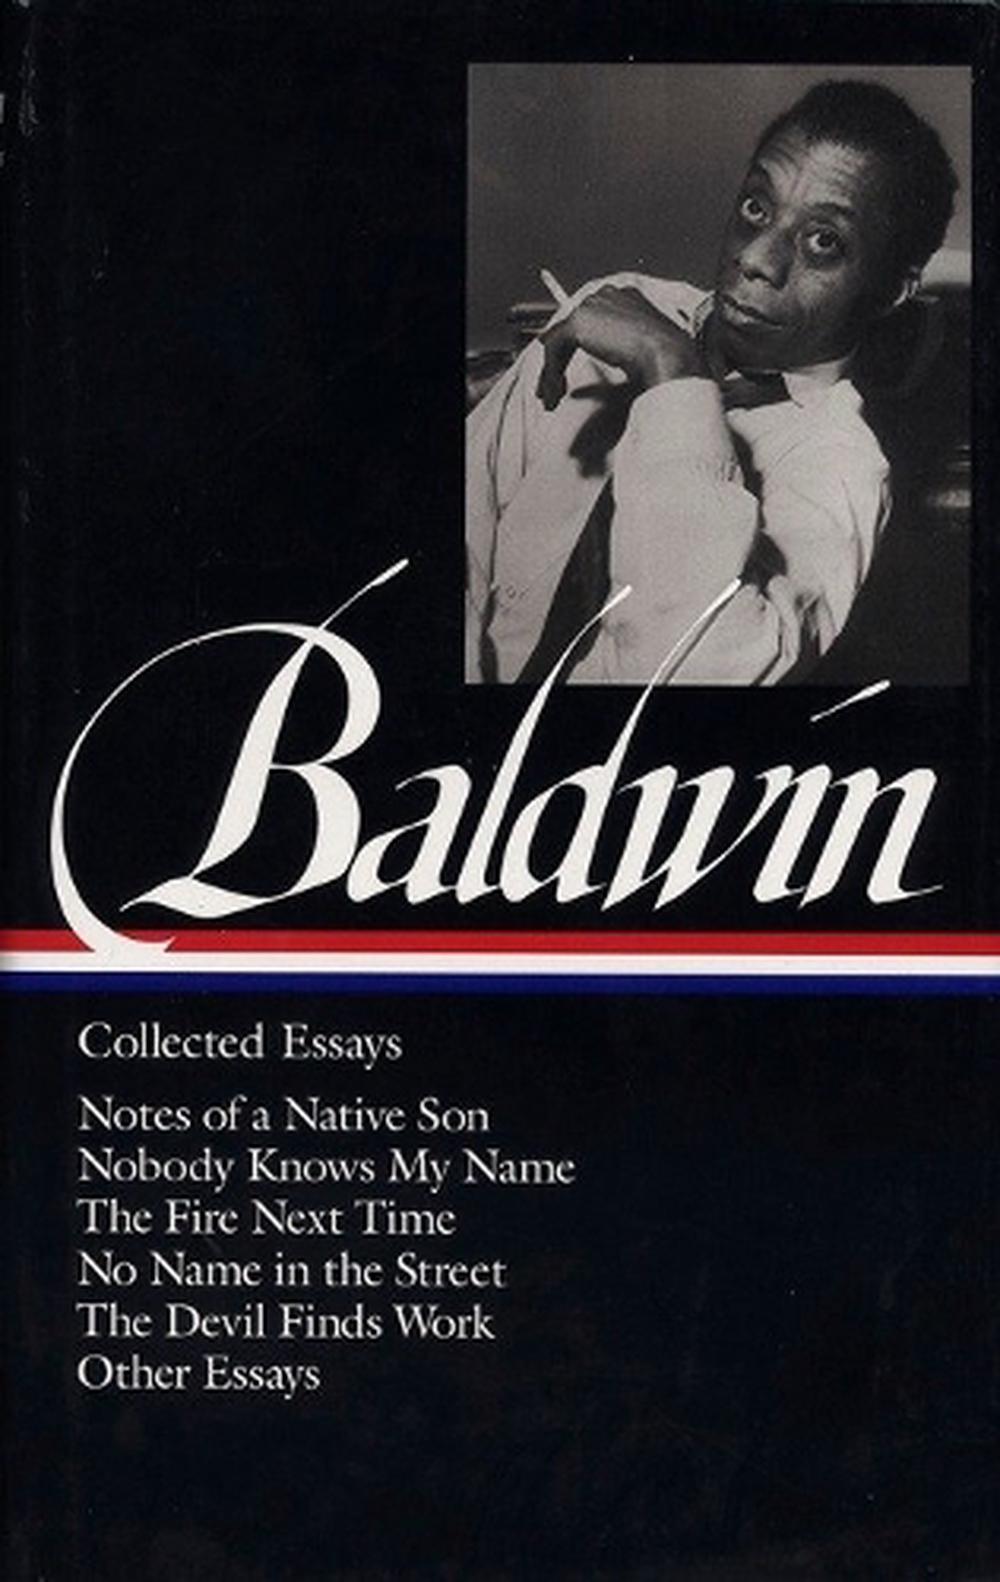 james baldwin collected essays